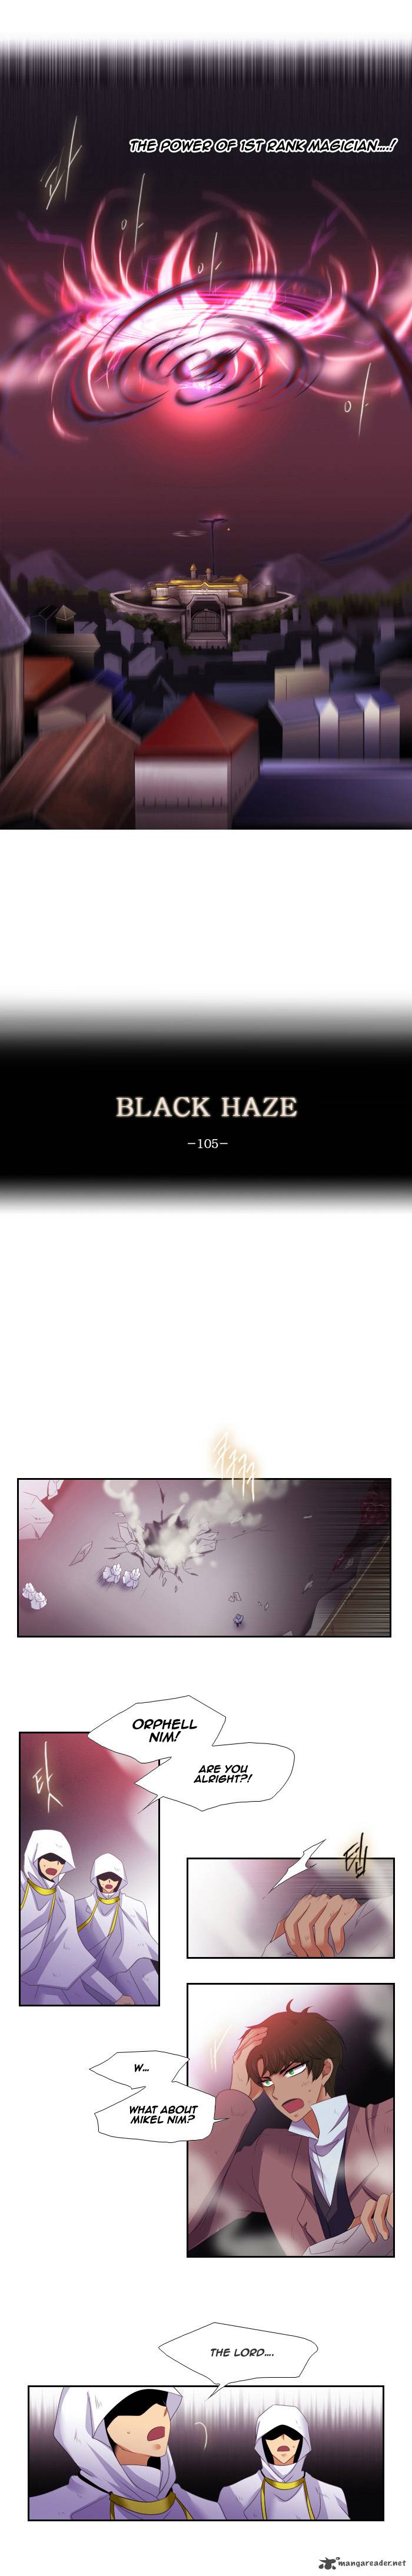 black_haze_105_4